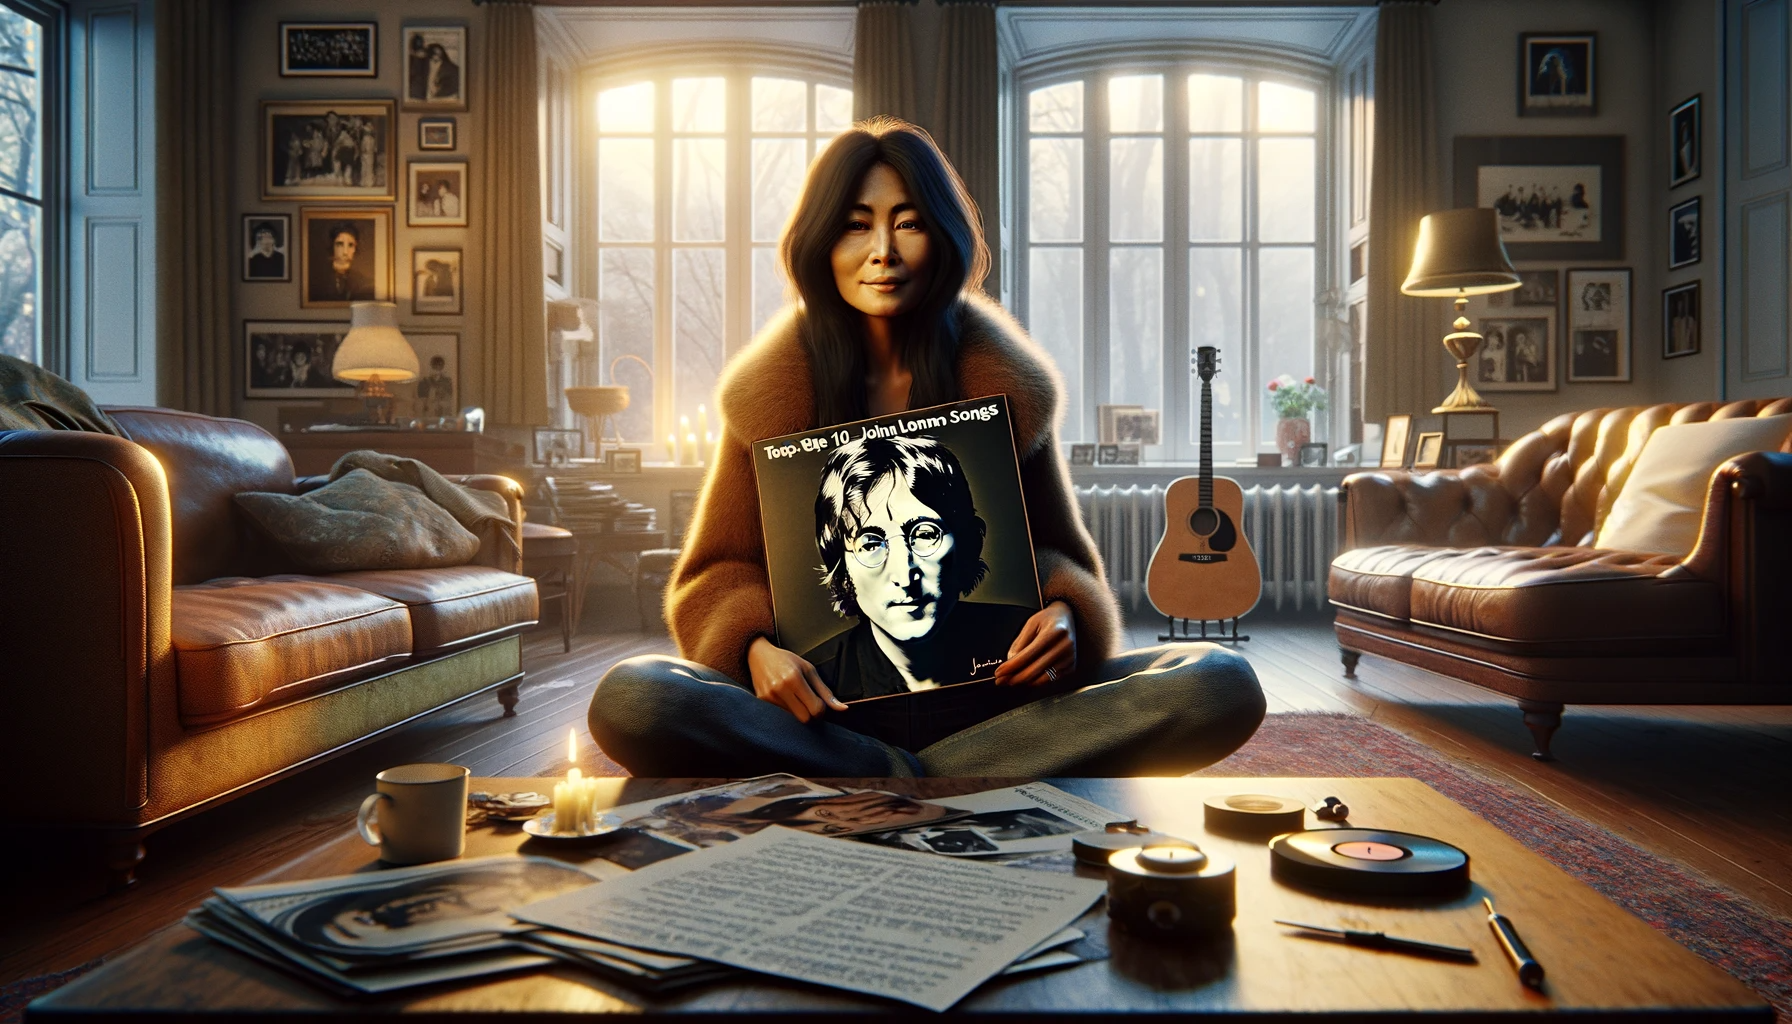 Yoko Ono segurando um disco de vinil com as melhores músicas de John Lennon em um ambiente aconchegante repleto de memorabilia.